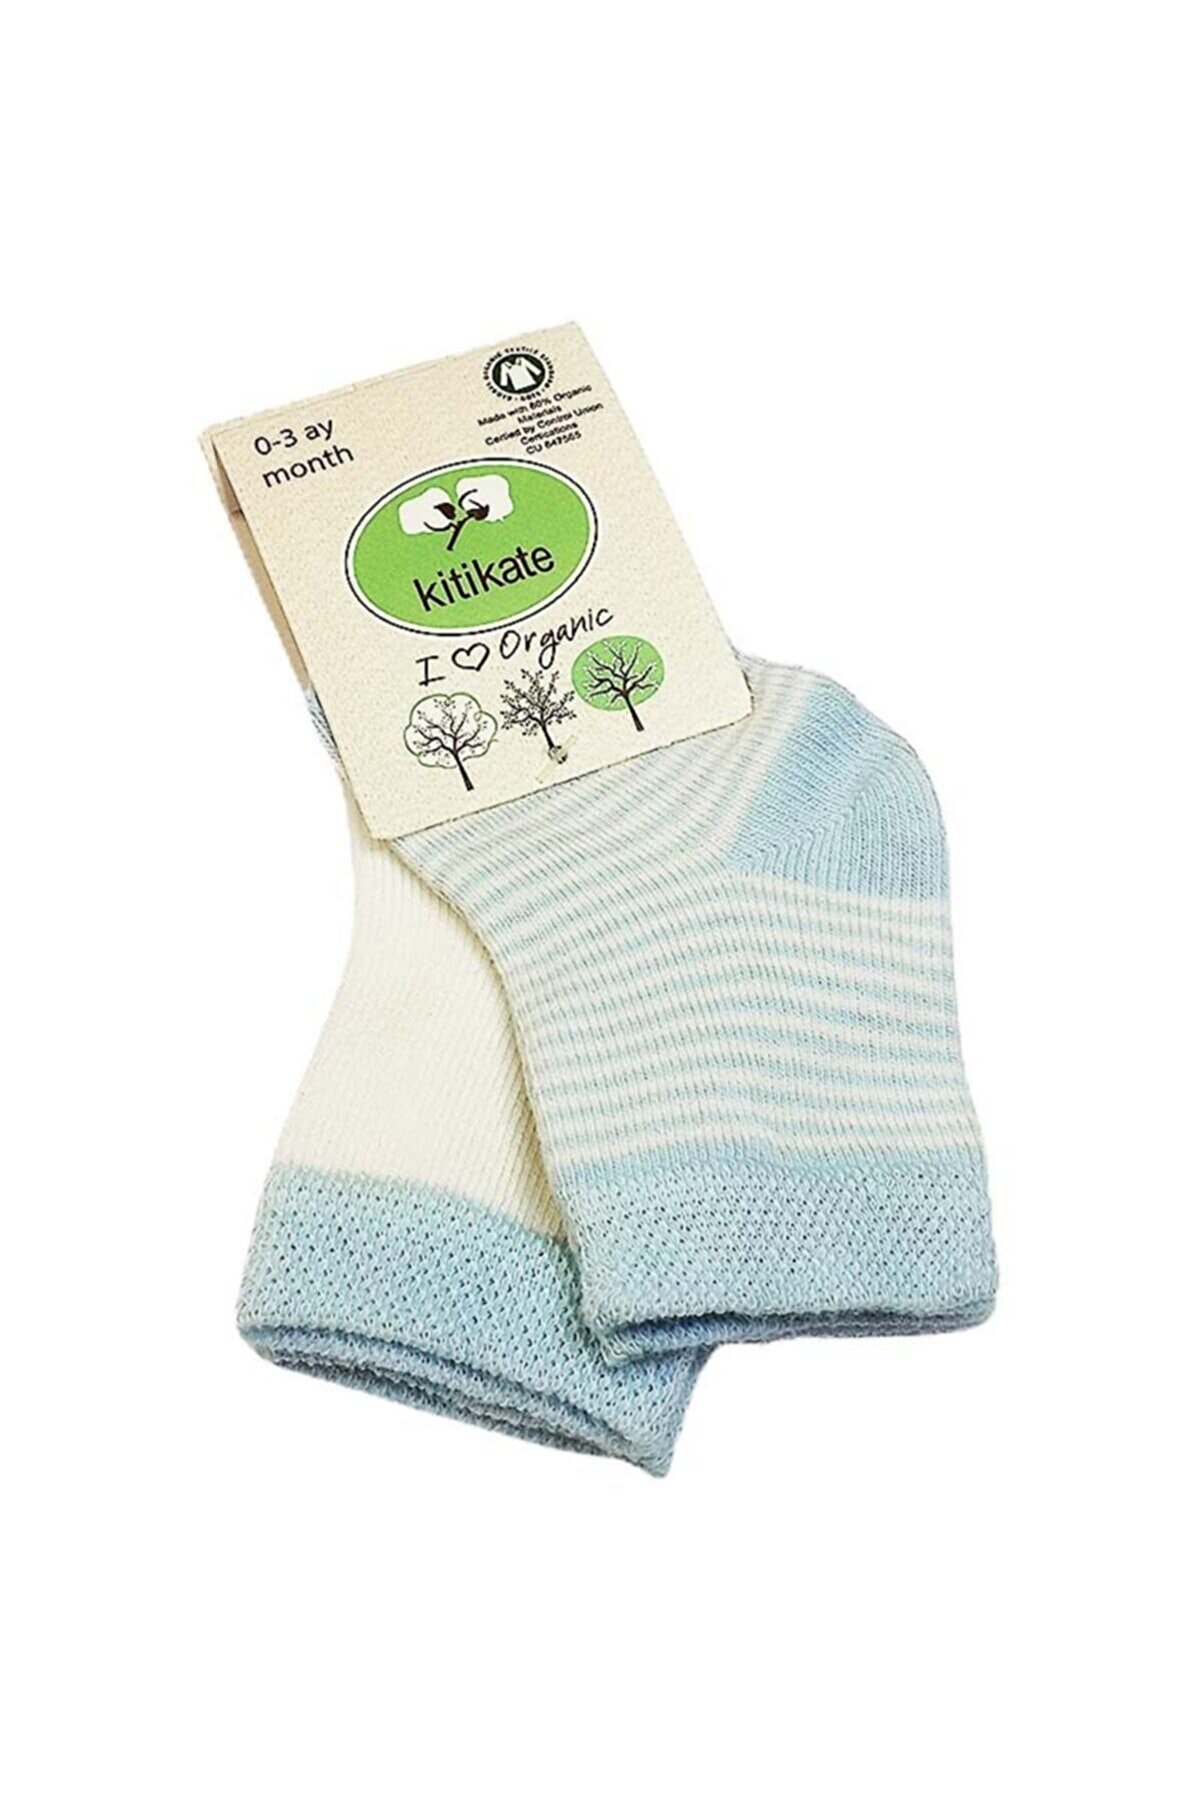 kitikate Bebek Mavi Organik Çorabı 0-3 Ay 2 Li